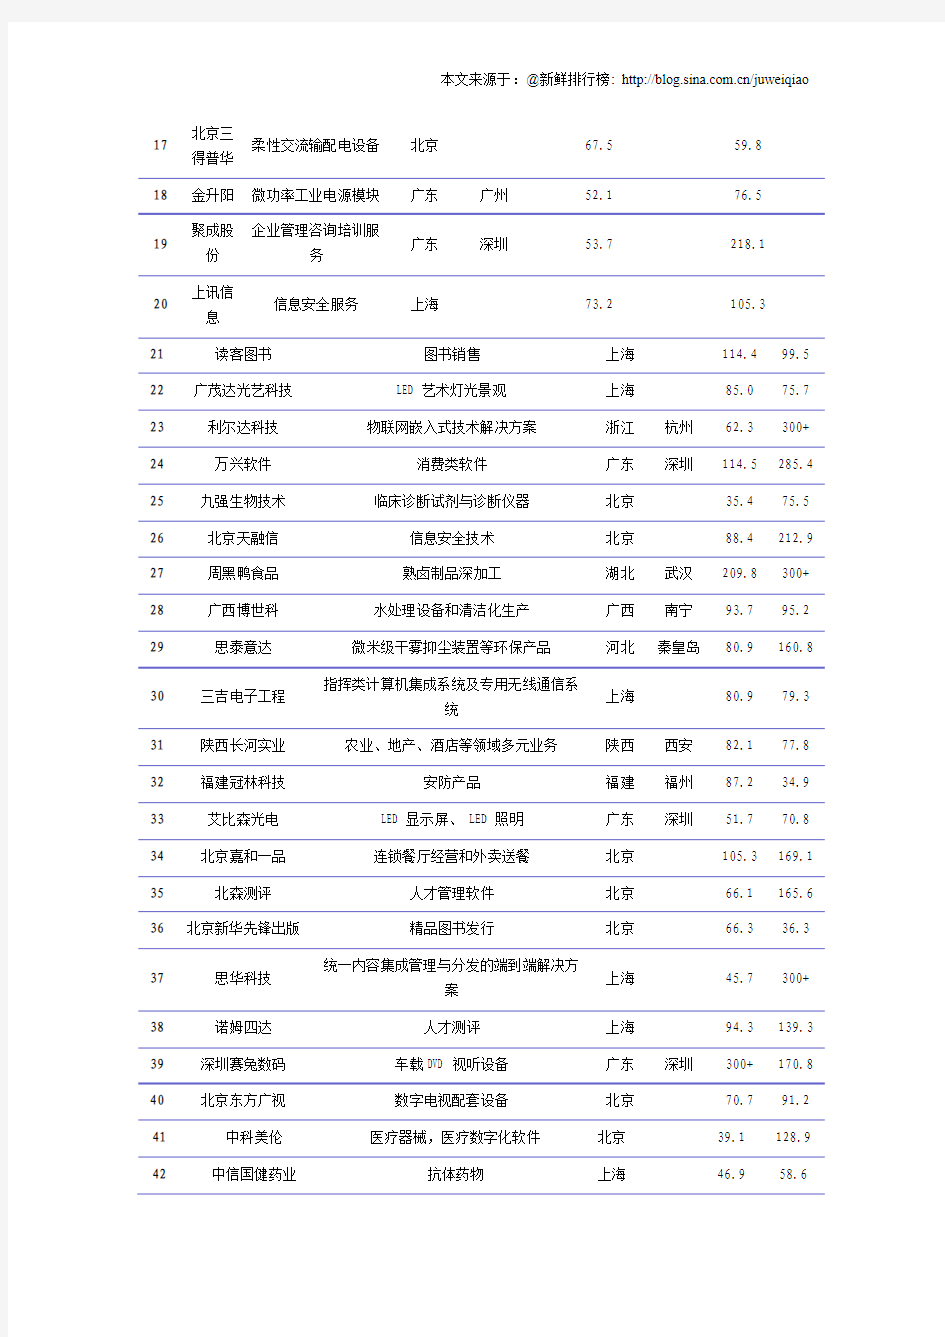 福布斯2012中国最具潜力企业排行榜(非上市公司)